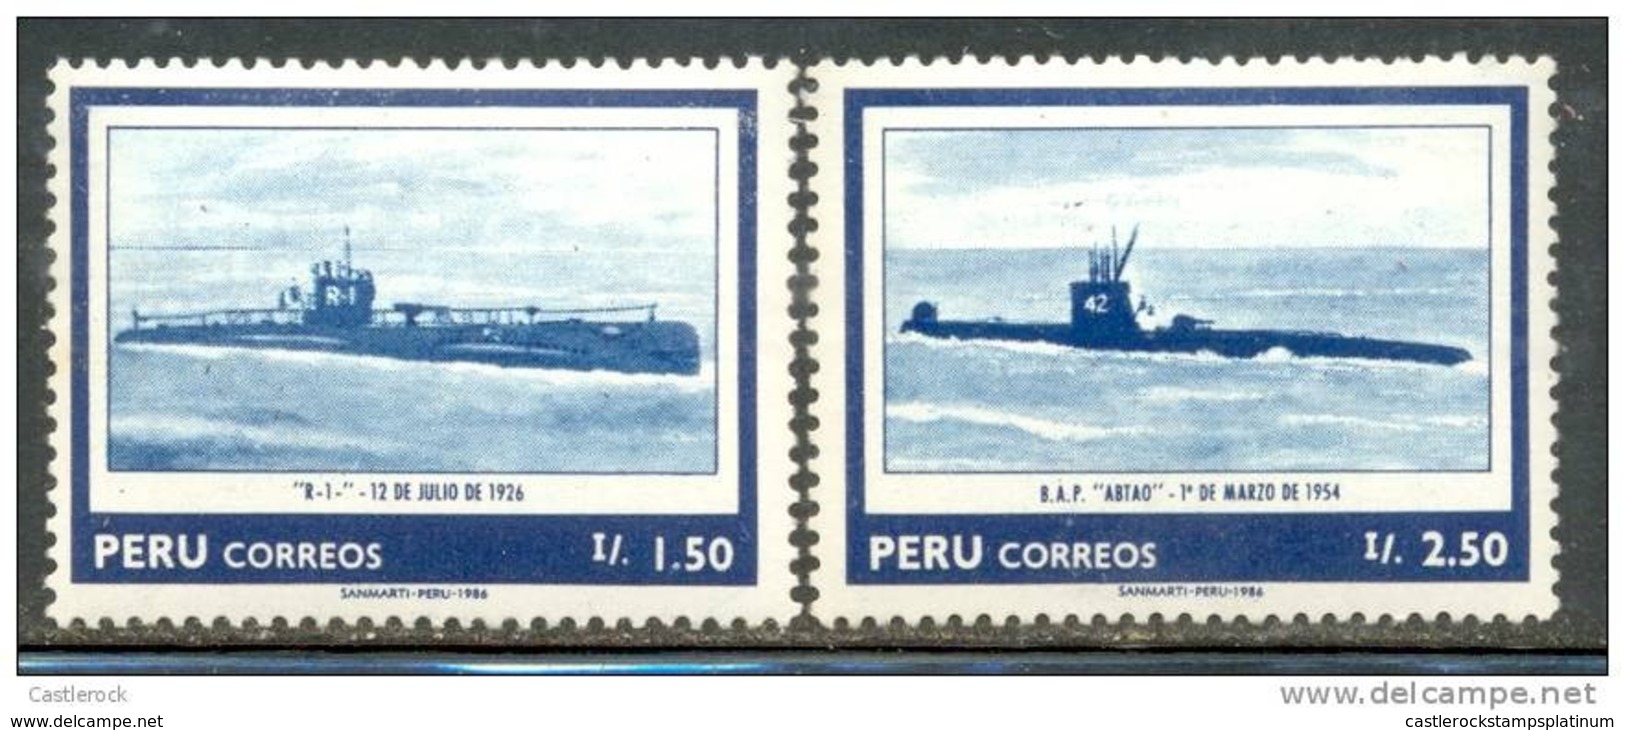 O) 1986 PERU, NAVY - 1.50i R-1 SC 873, 2.50i ABTAO SC 874 ( N) III- 2010 ), MNH - Peru